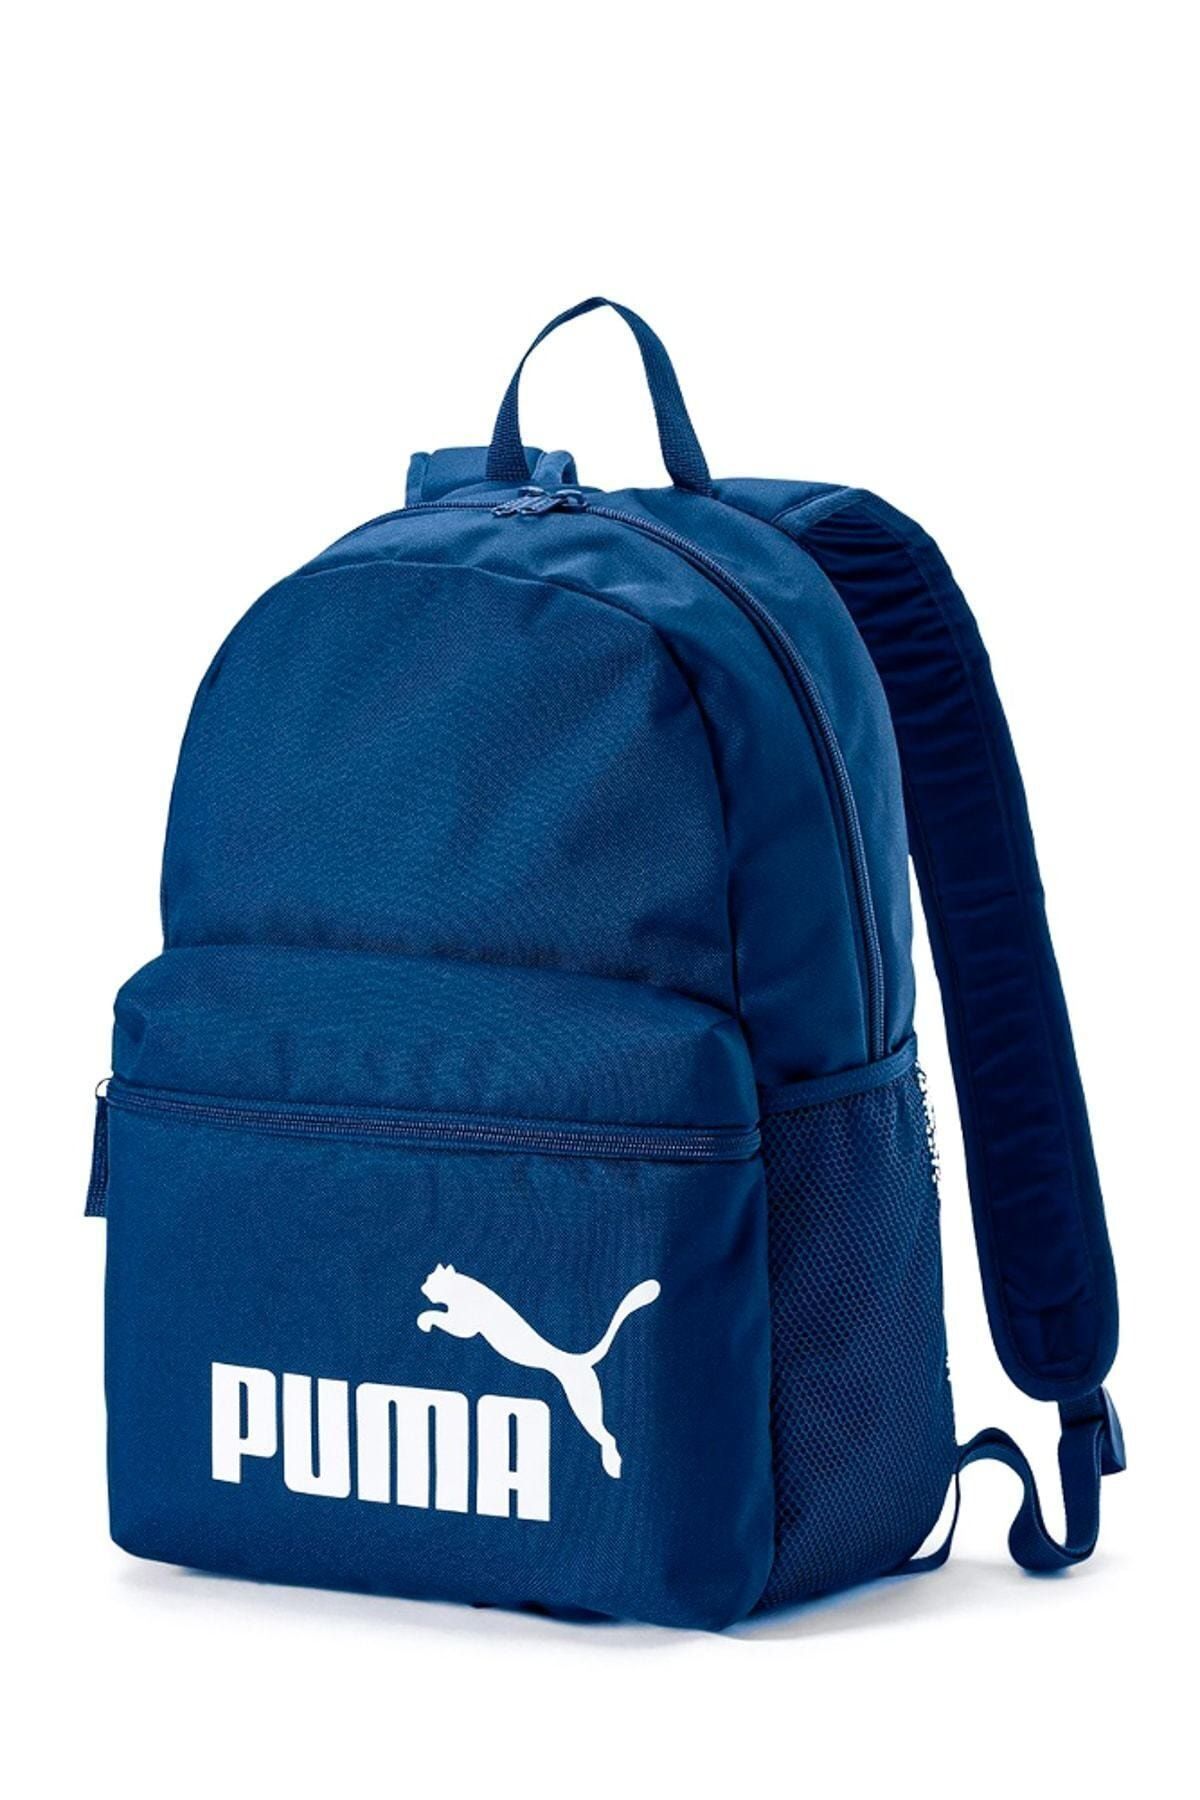 Puma Phase Backpack Koyu Mavi Unisex Sırt Çantası 100351337